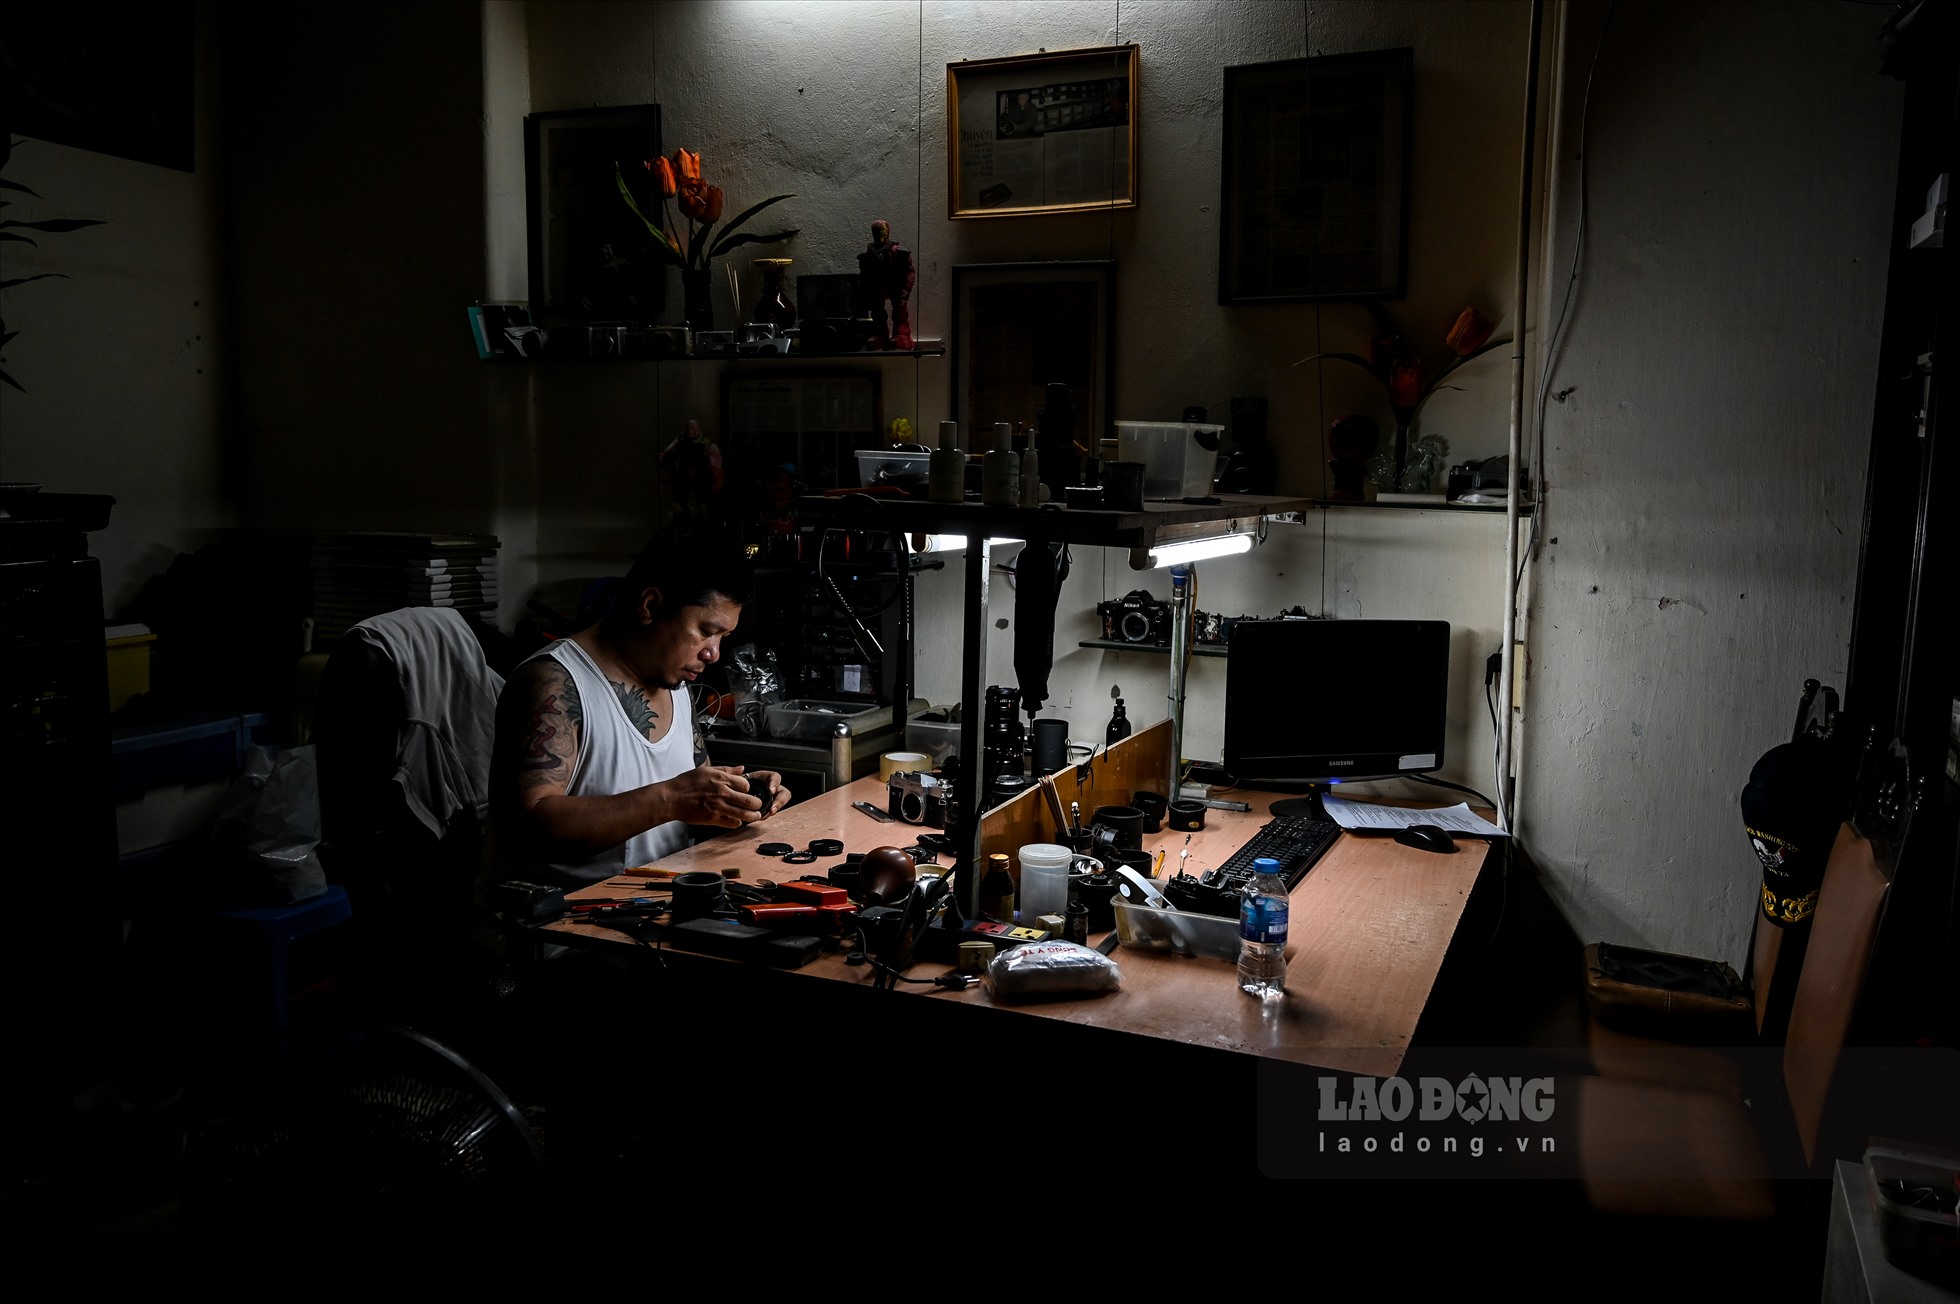 Trong căn phòng nhỏ, anh Nguyễn Ngọc Long vẫn hàng ngày sửa những chiếc máy ảnh cơ. Nhìn thì đơn giản nhưng người thợ buộc phải có tính kiên trì, tỉ mỉ, tinh thần ham học hỏi và óc sáng tạo. Nghề sửa máy ảnh gia truyền được bắt nguồn từ đời cụ của anh Long.